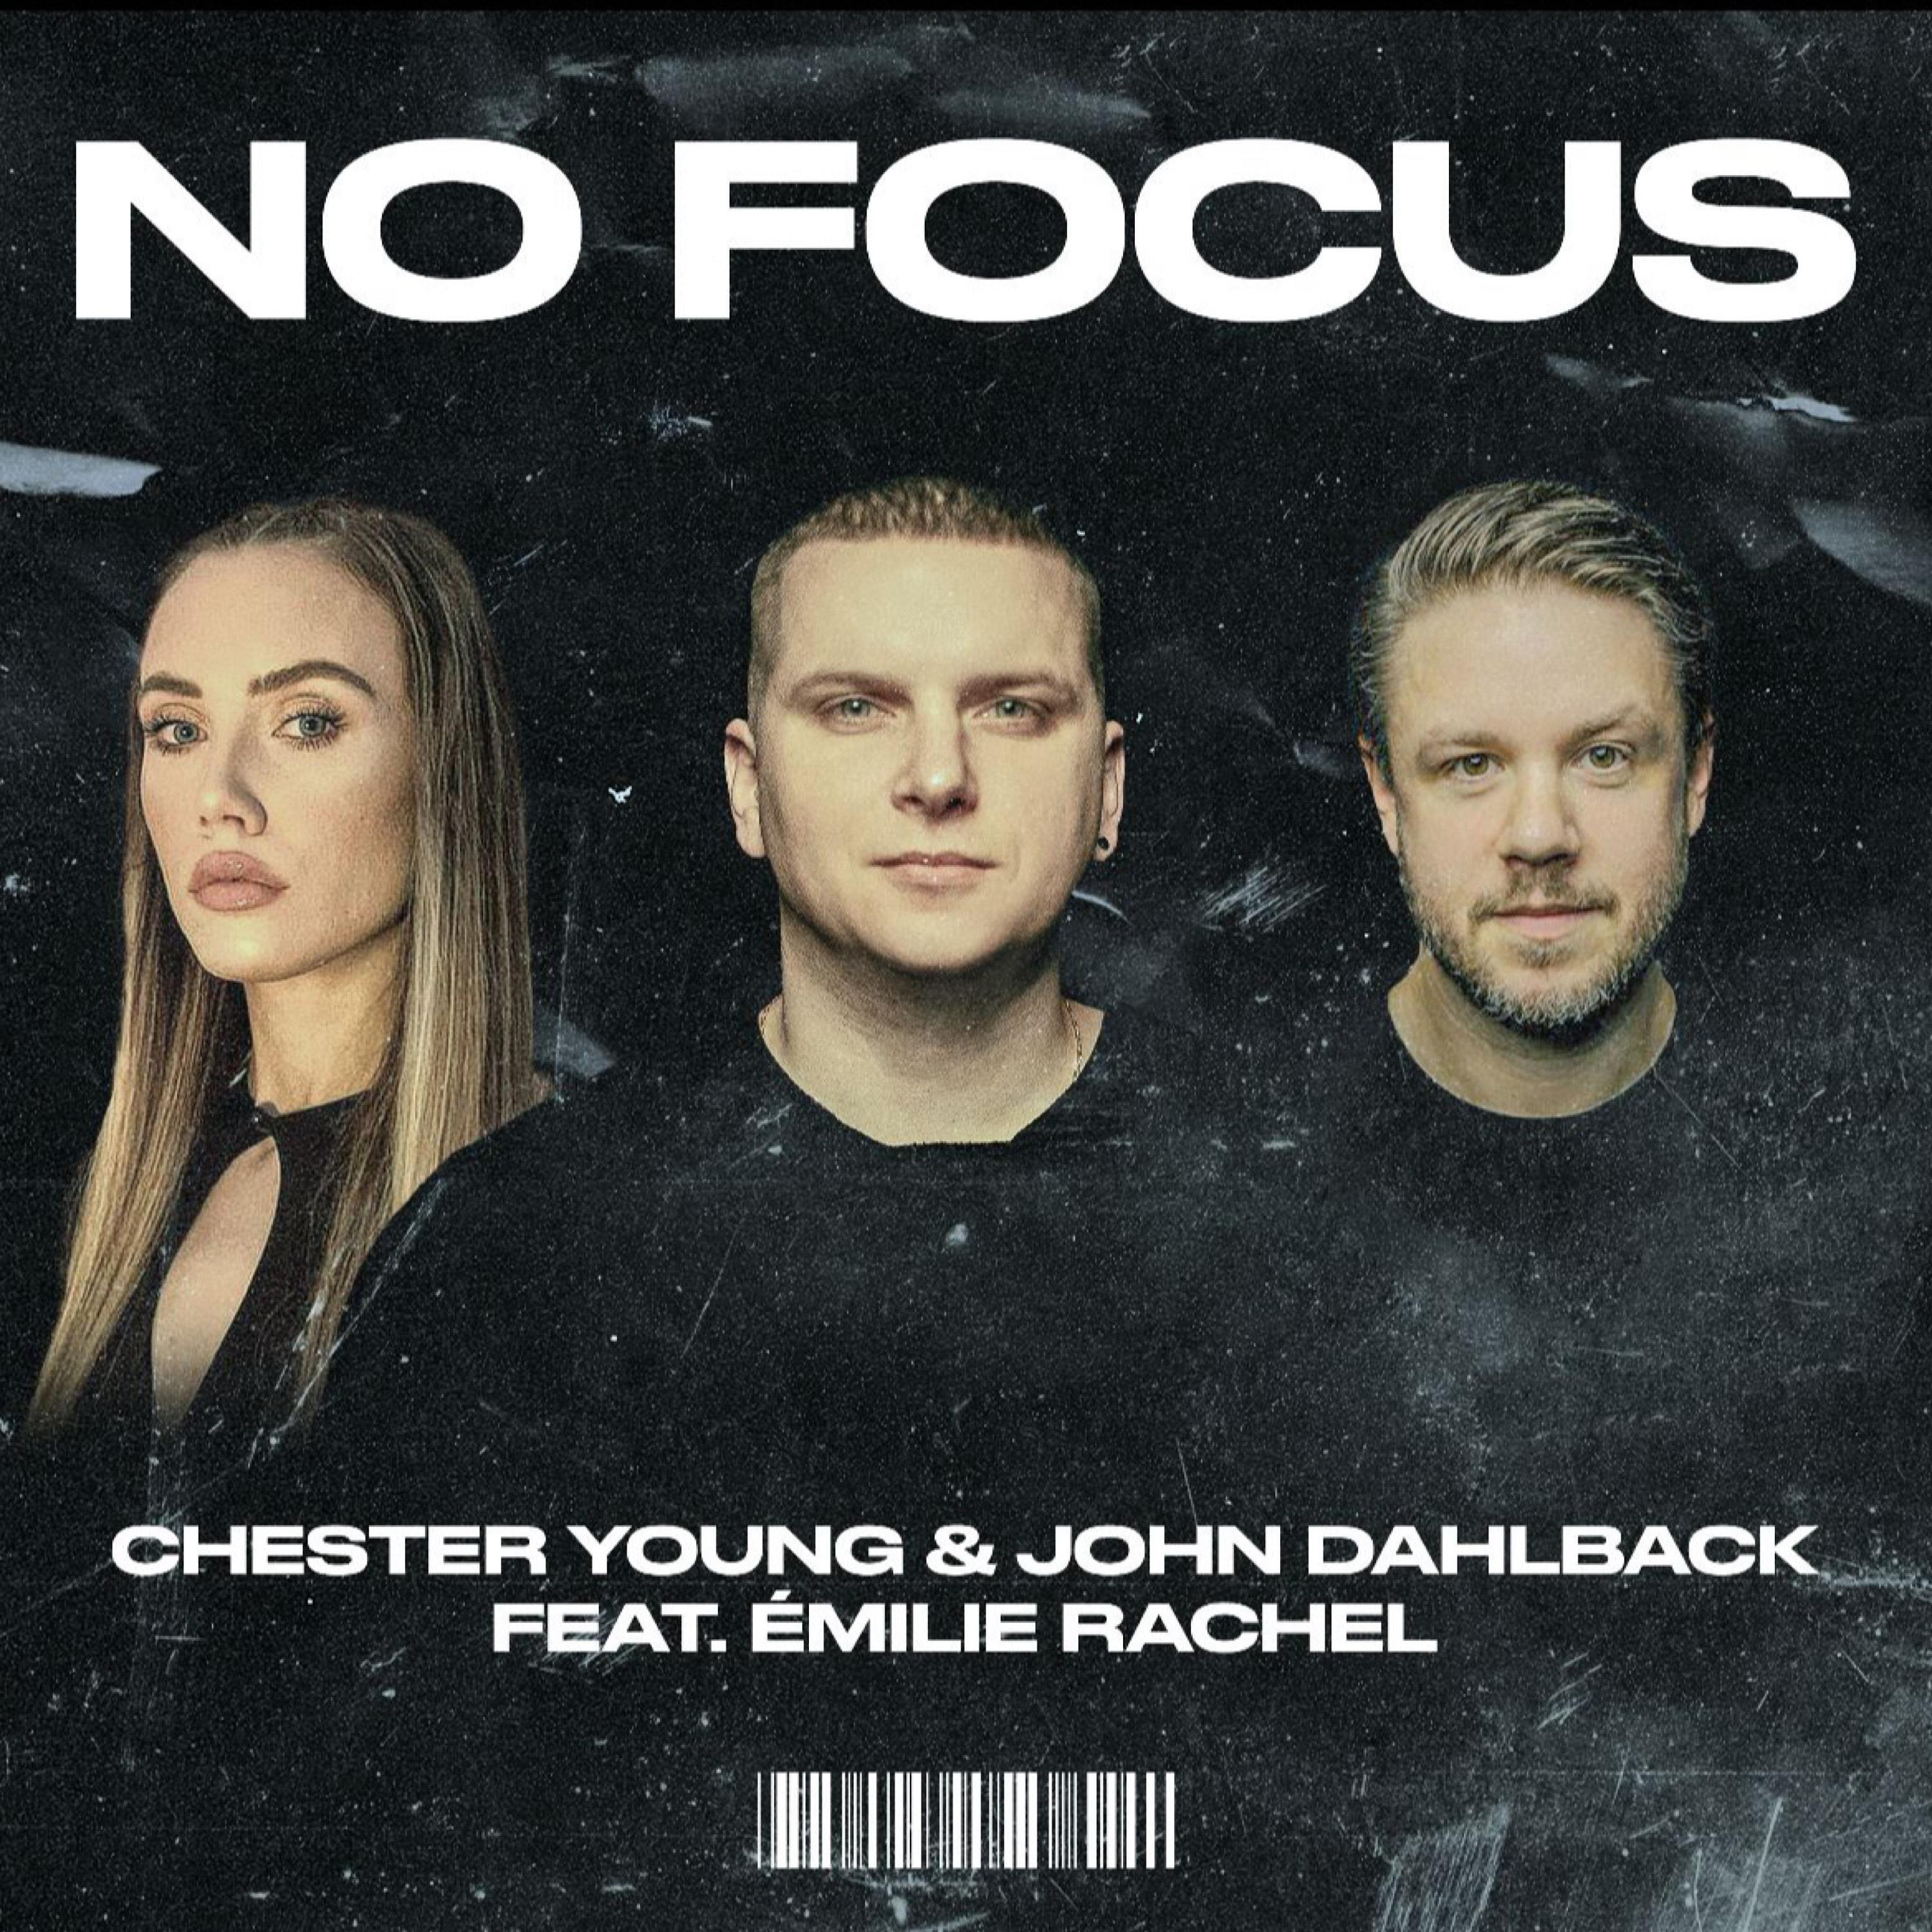 John Dahlbäck - No Focus (Instrumental Version)